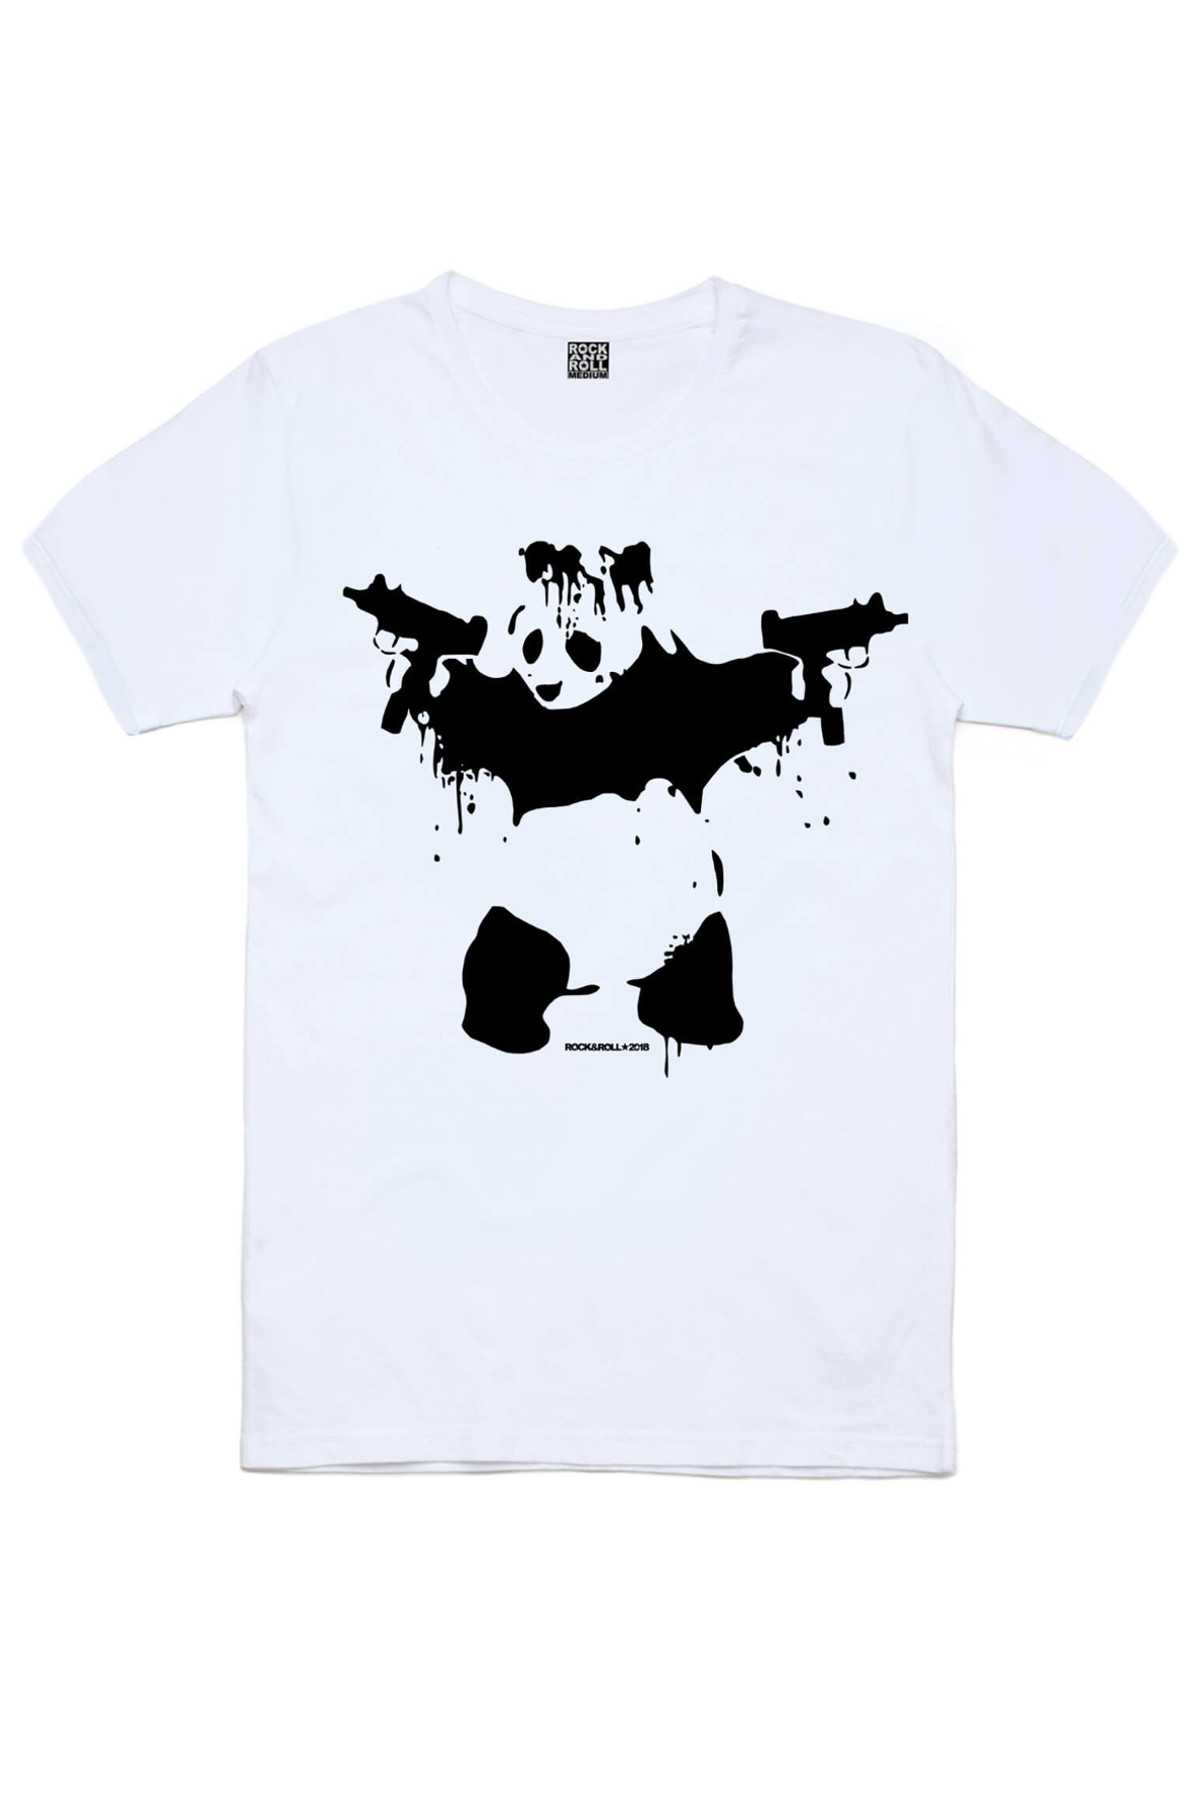 Bandanalı Panda, Satürnde Panda, Uzi Tabancalı Panda Erkek 3'lü Eko Paket T-shirt